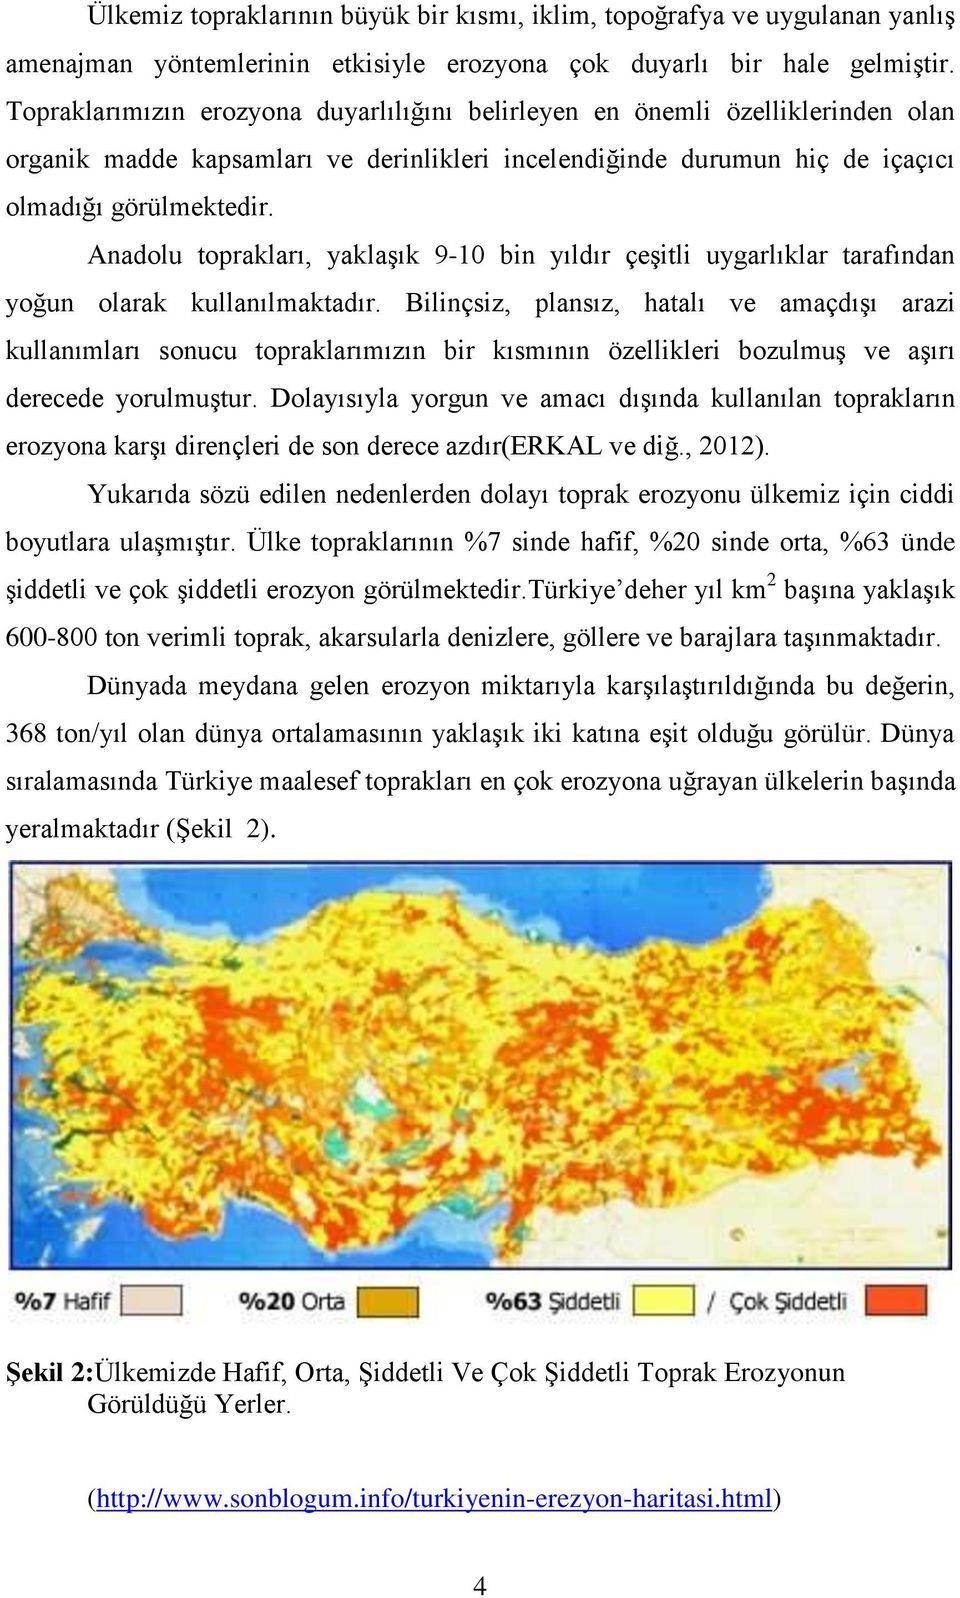 Anadolu toprakları, yaklaşık 9-10 bin yıldır çeşitli uygarlıklar tarafından yoğun olarak kullanılmaktadır.